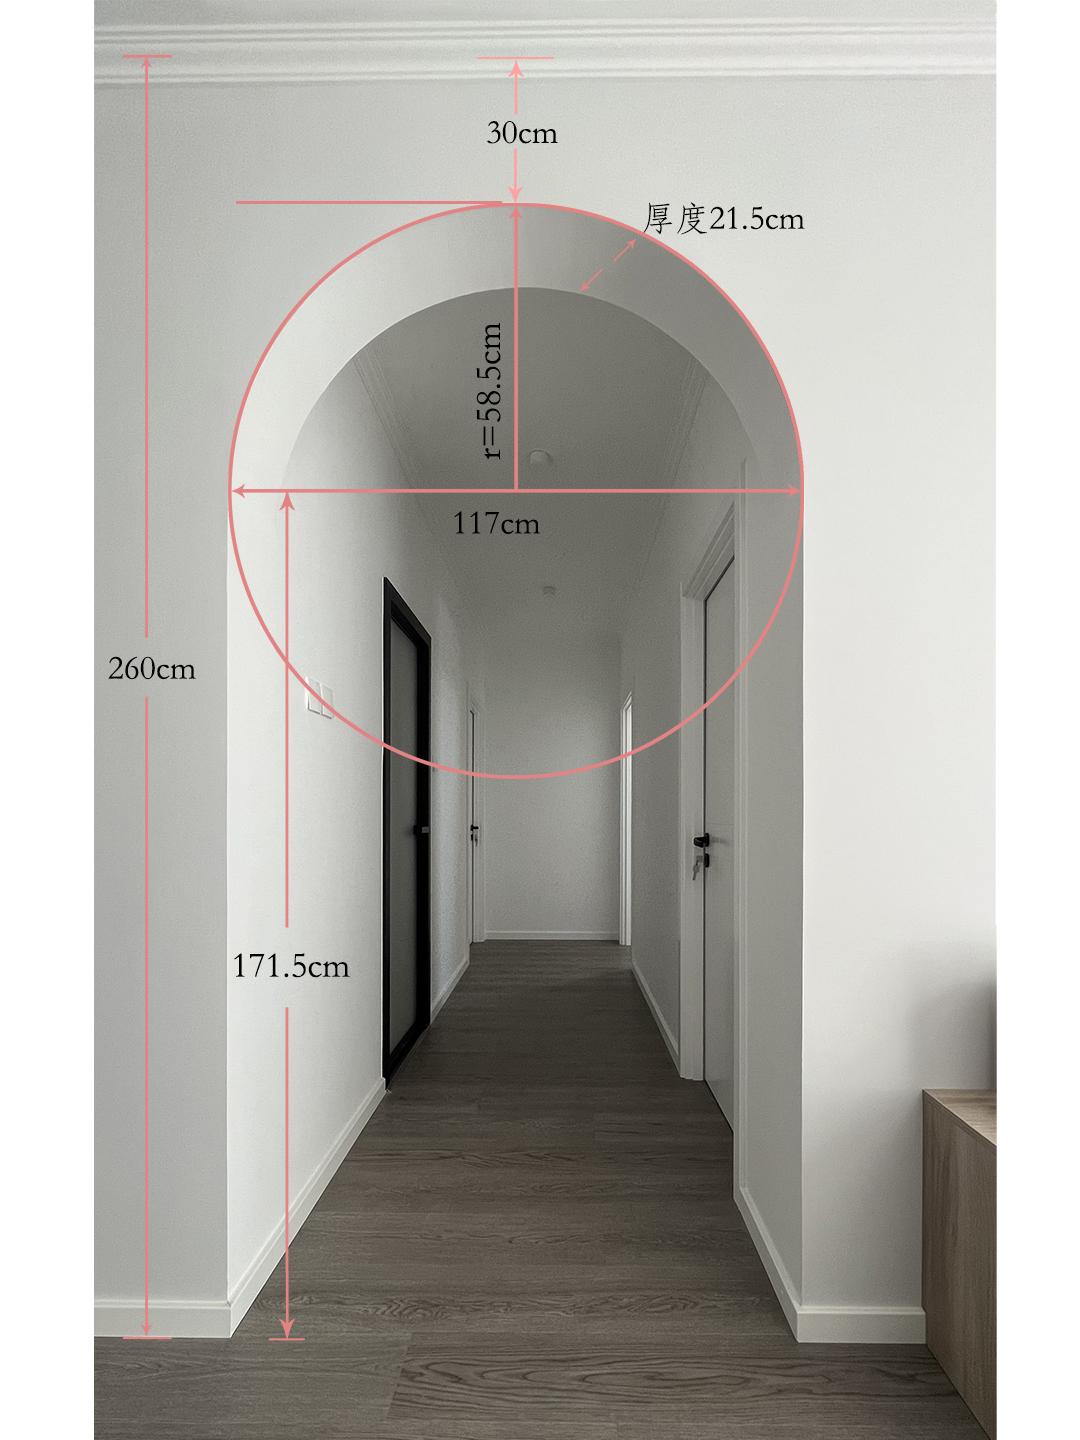 玖赫设计 的想法: 圆弧门设计一定要注意比例和尺寸！拒绝翻… - 知乎